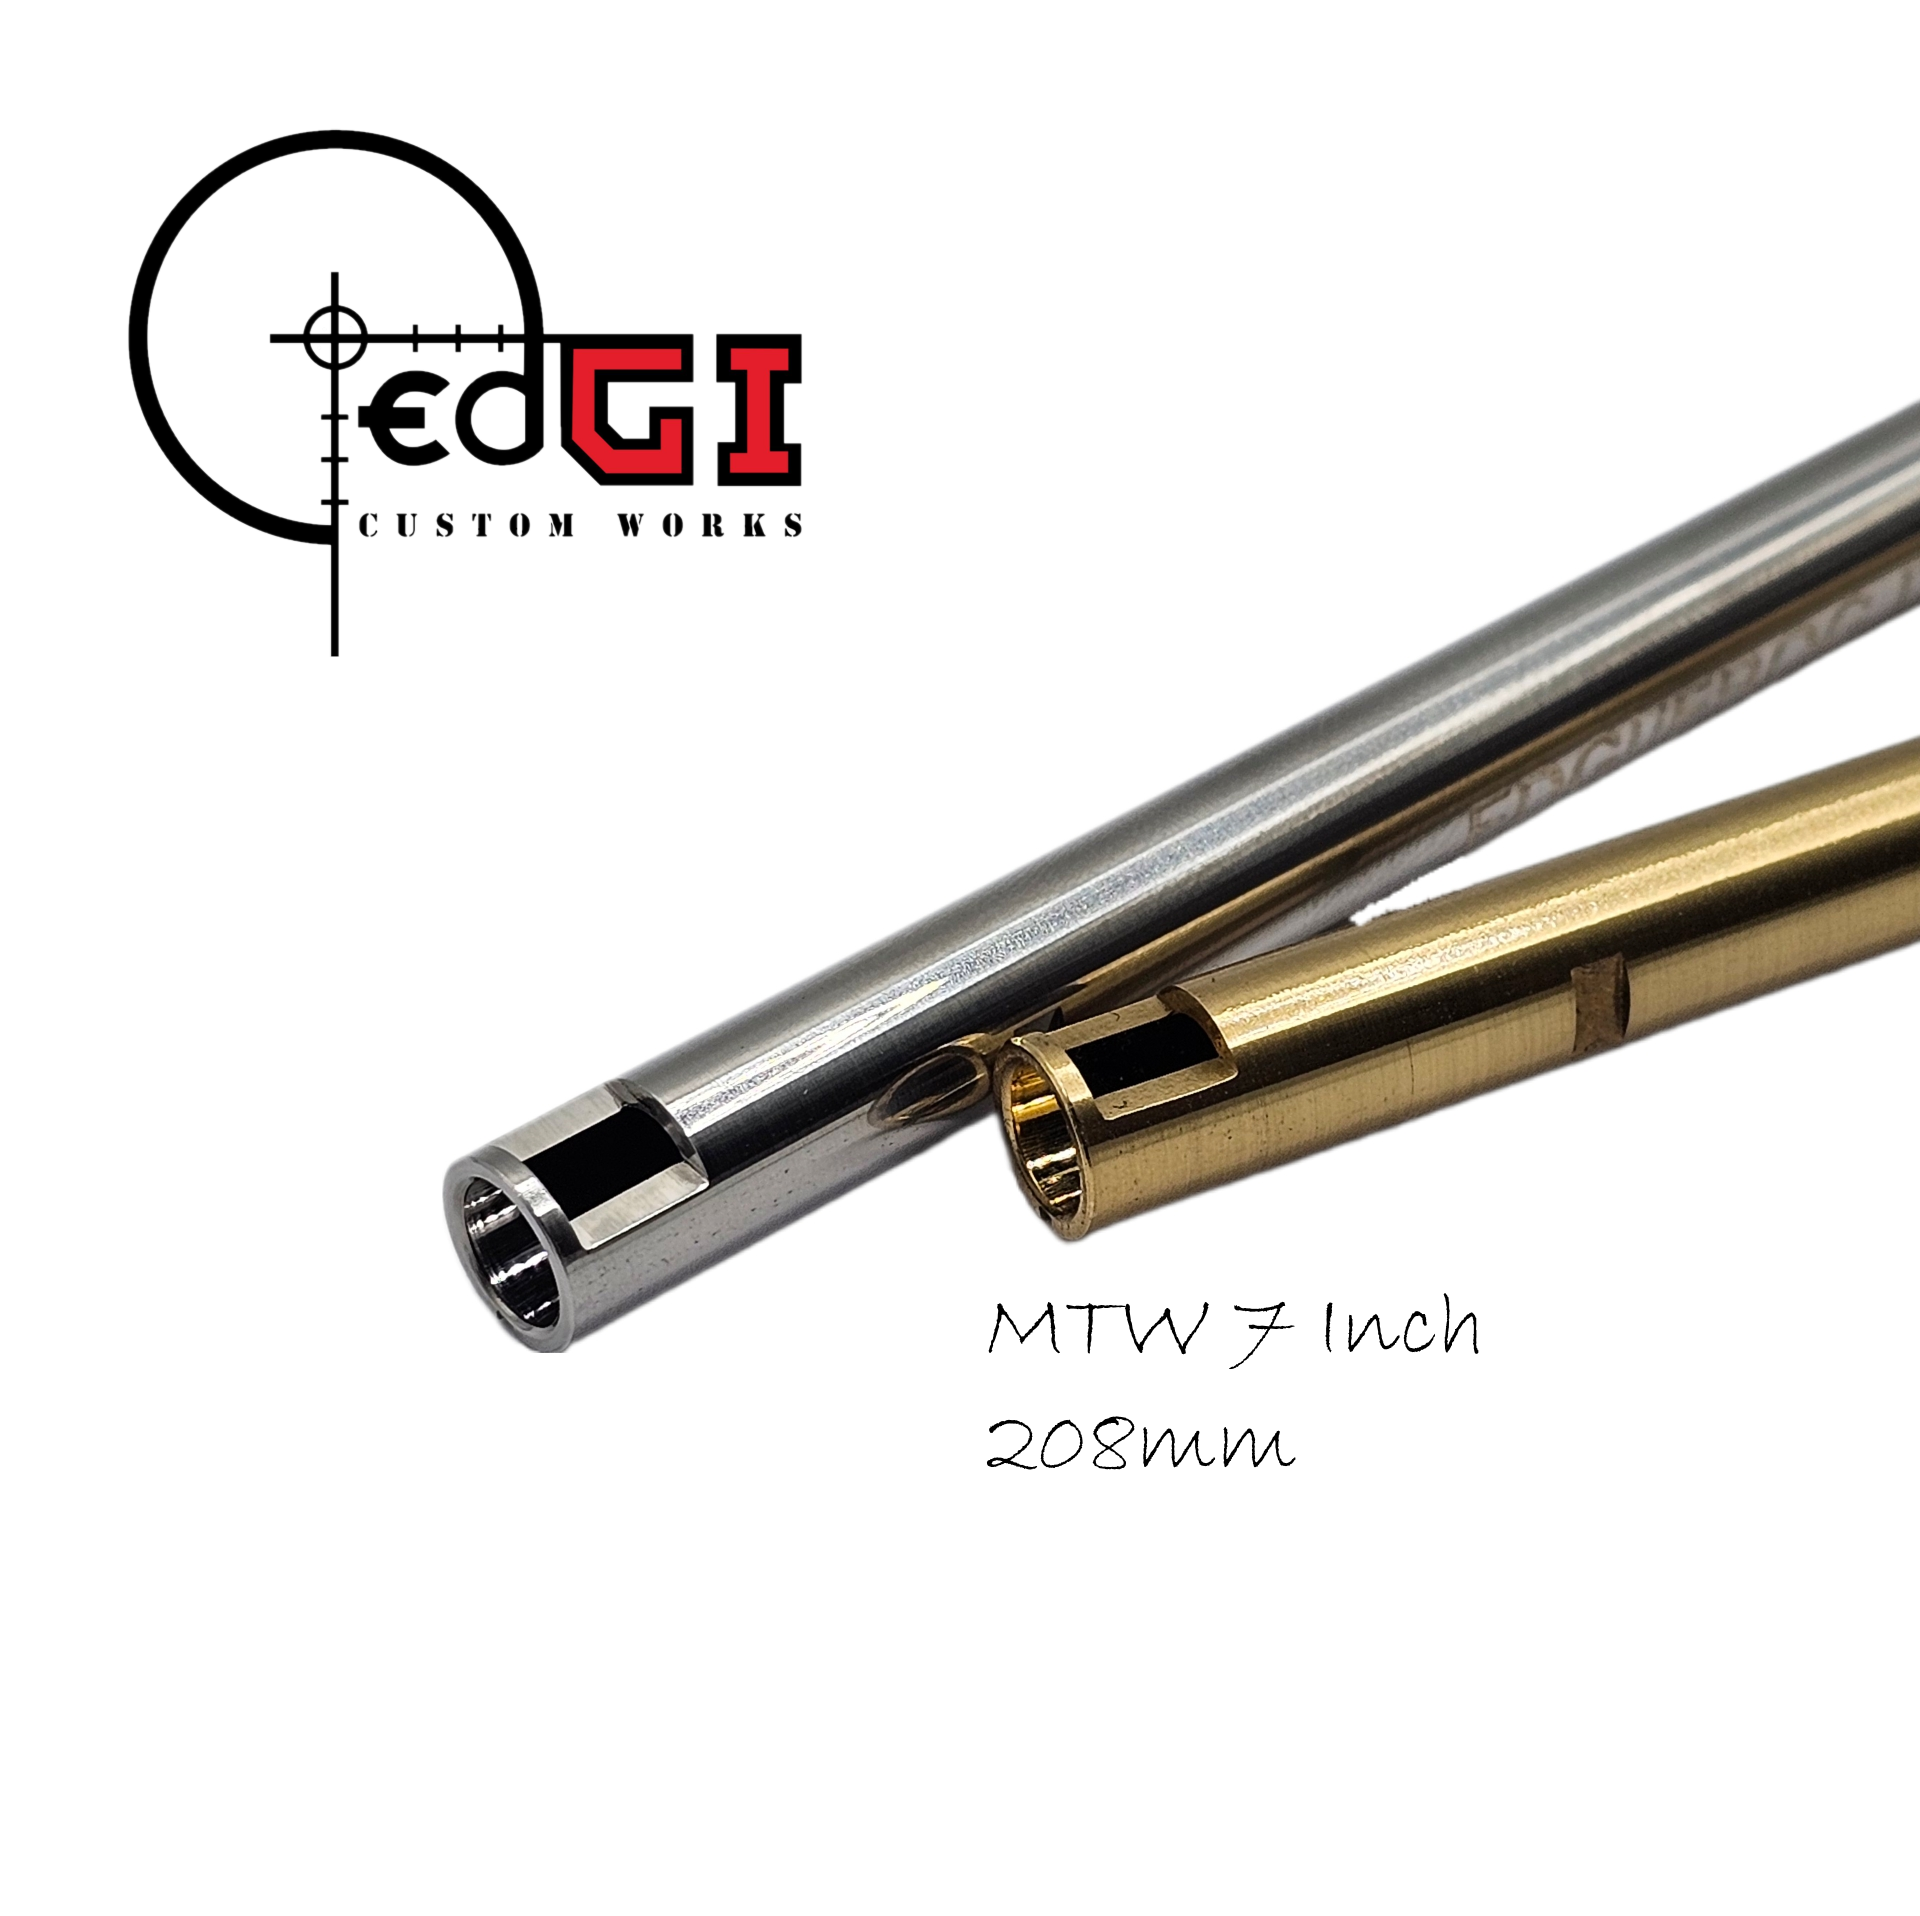 Edgi Custom Works - 208mm AEG Inner Barrel - MTW 7" / MTW-9